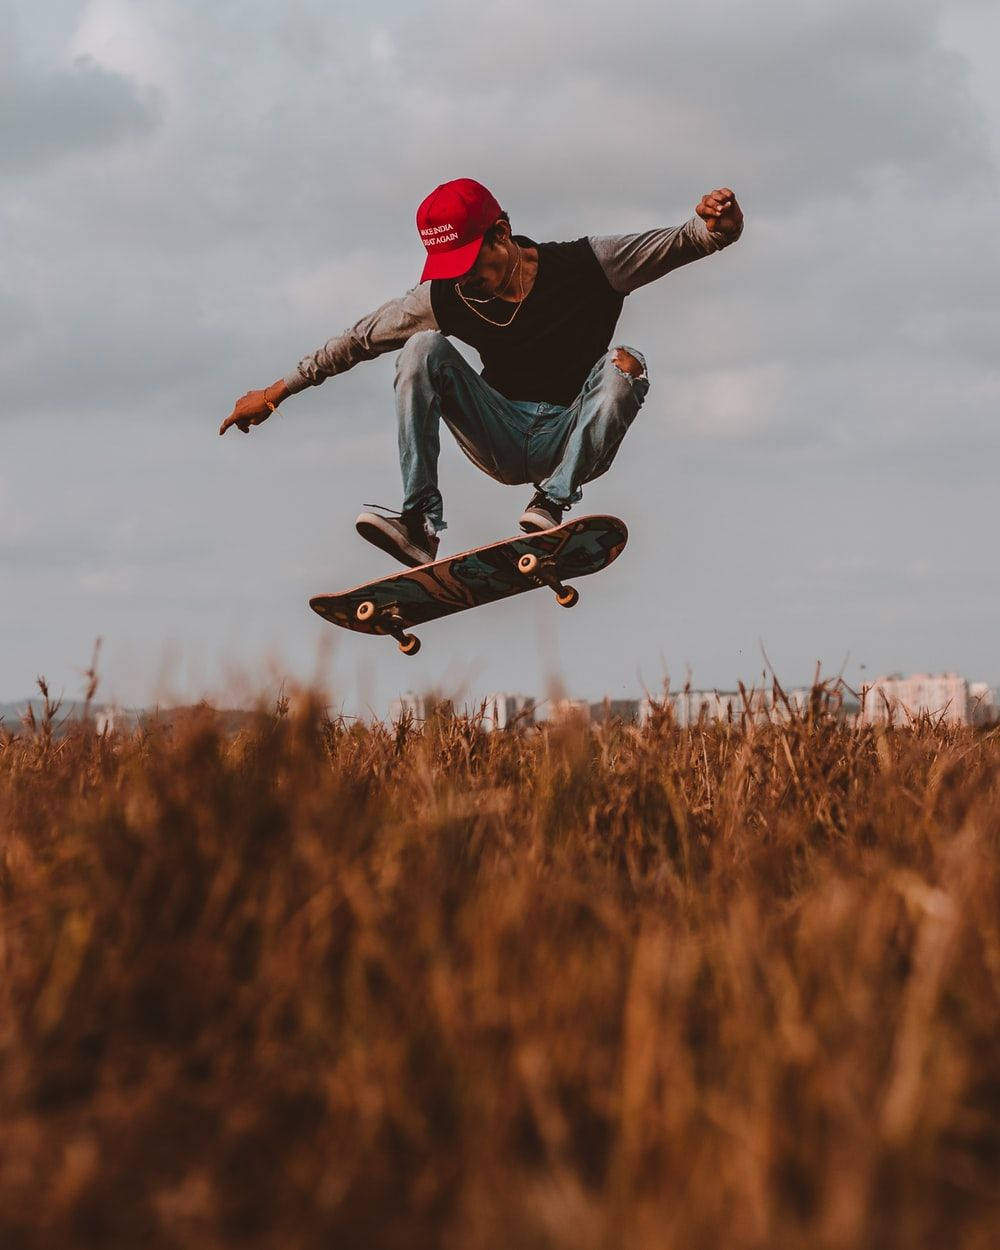 Wheat Field Midair Stunt Skater Aesthetic Wallpaper